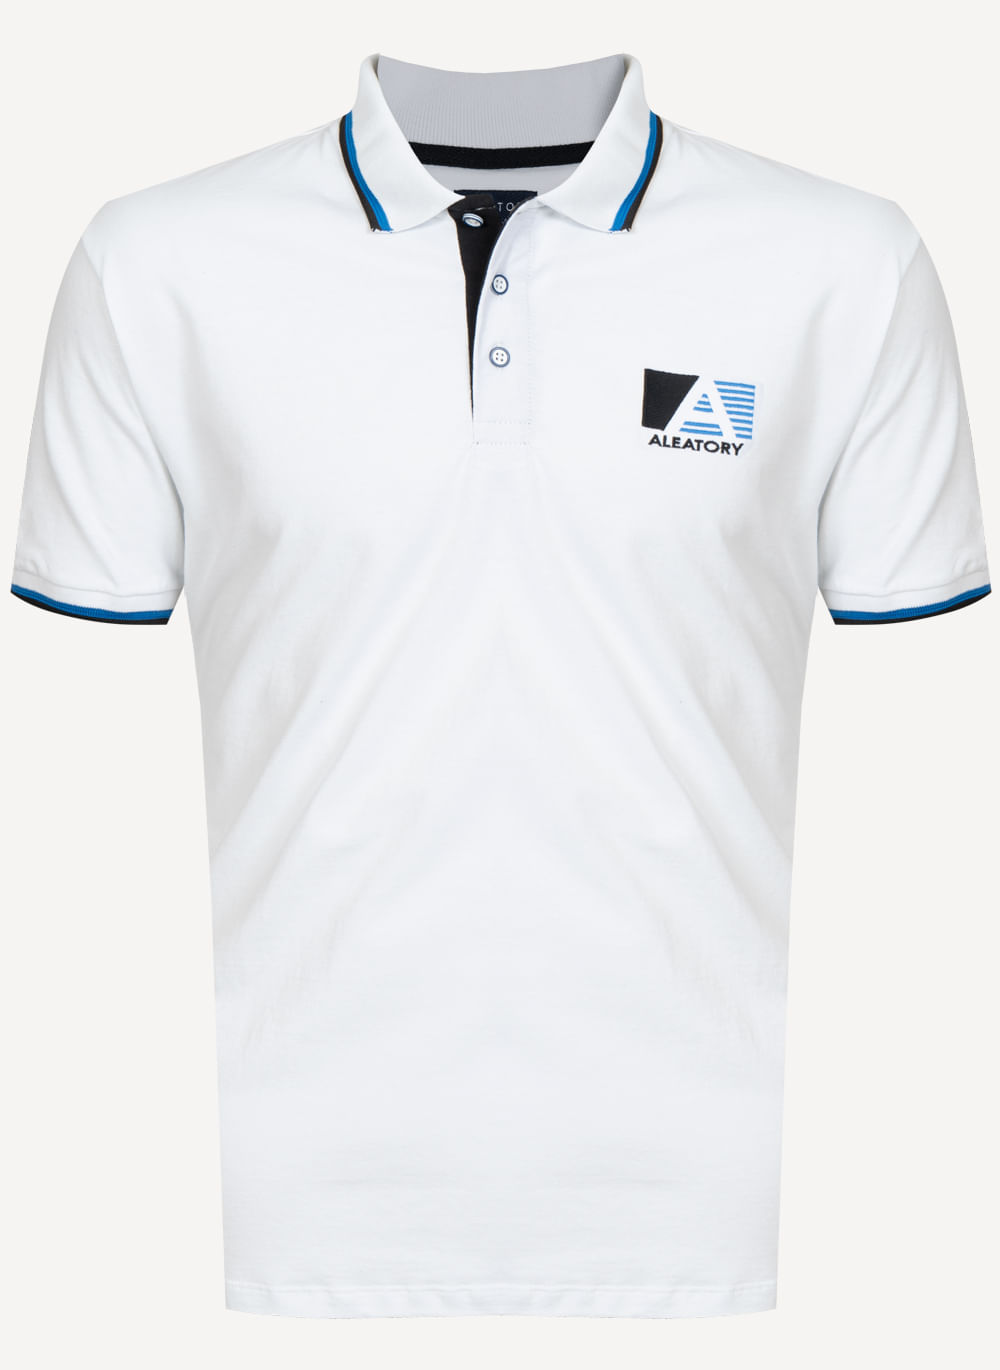 Camisa-Polo-Aleatory-A-Team-Branca-Branco-P